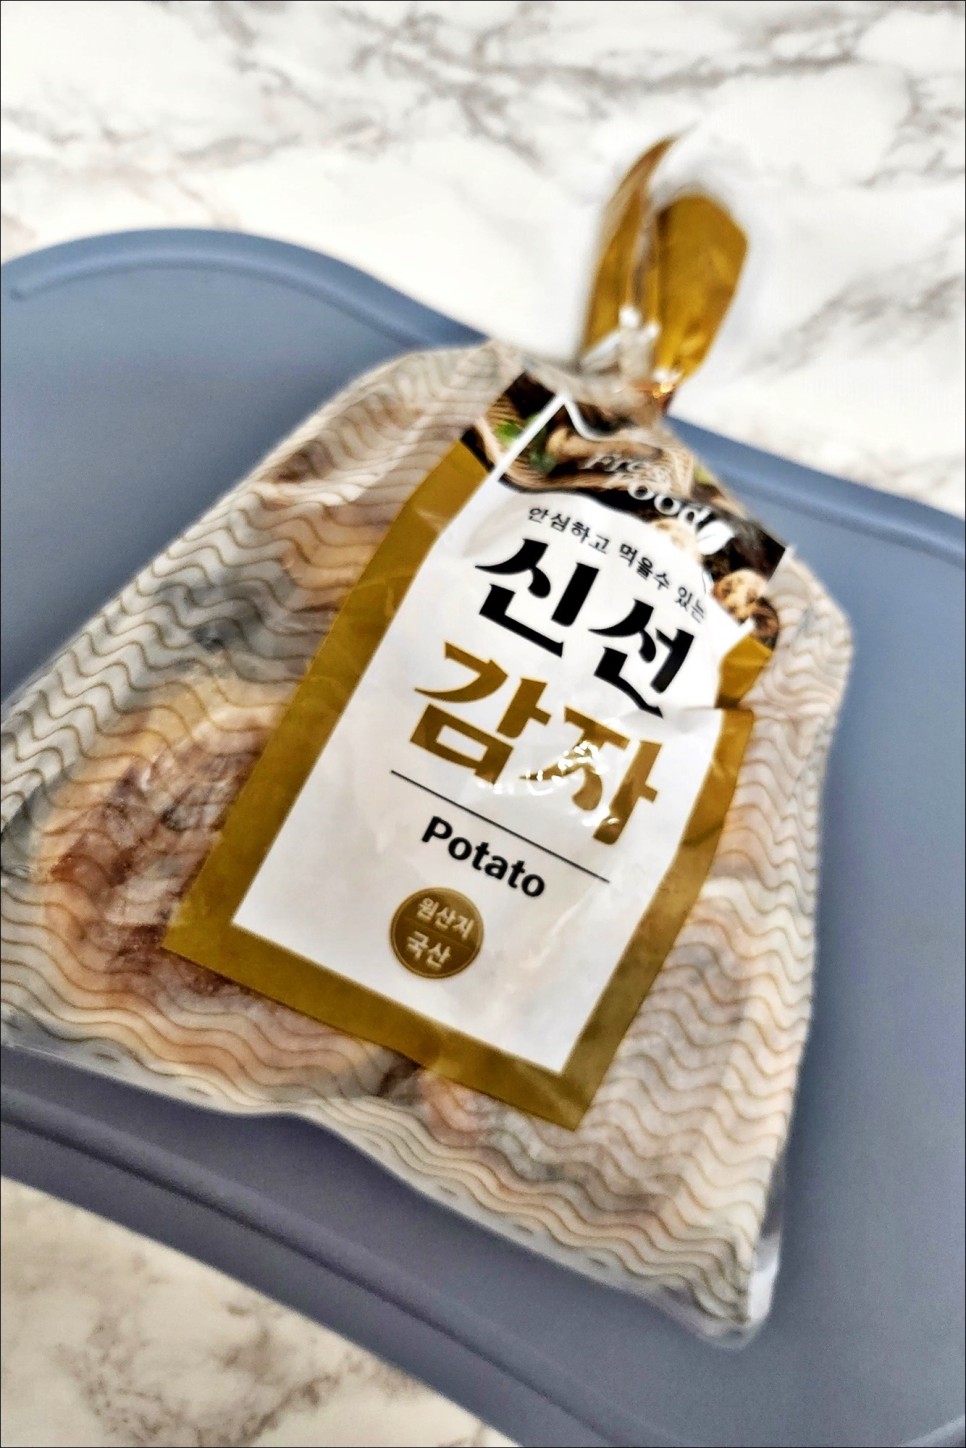 강릉중앙시장 먹거리 꿀감자빵 순두부아이스크림 찐이네!